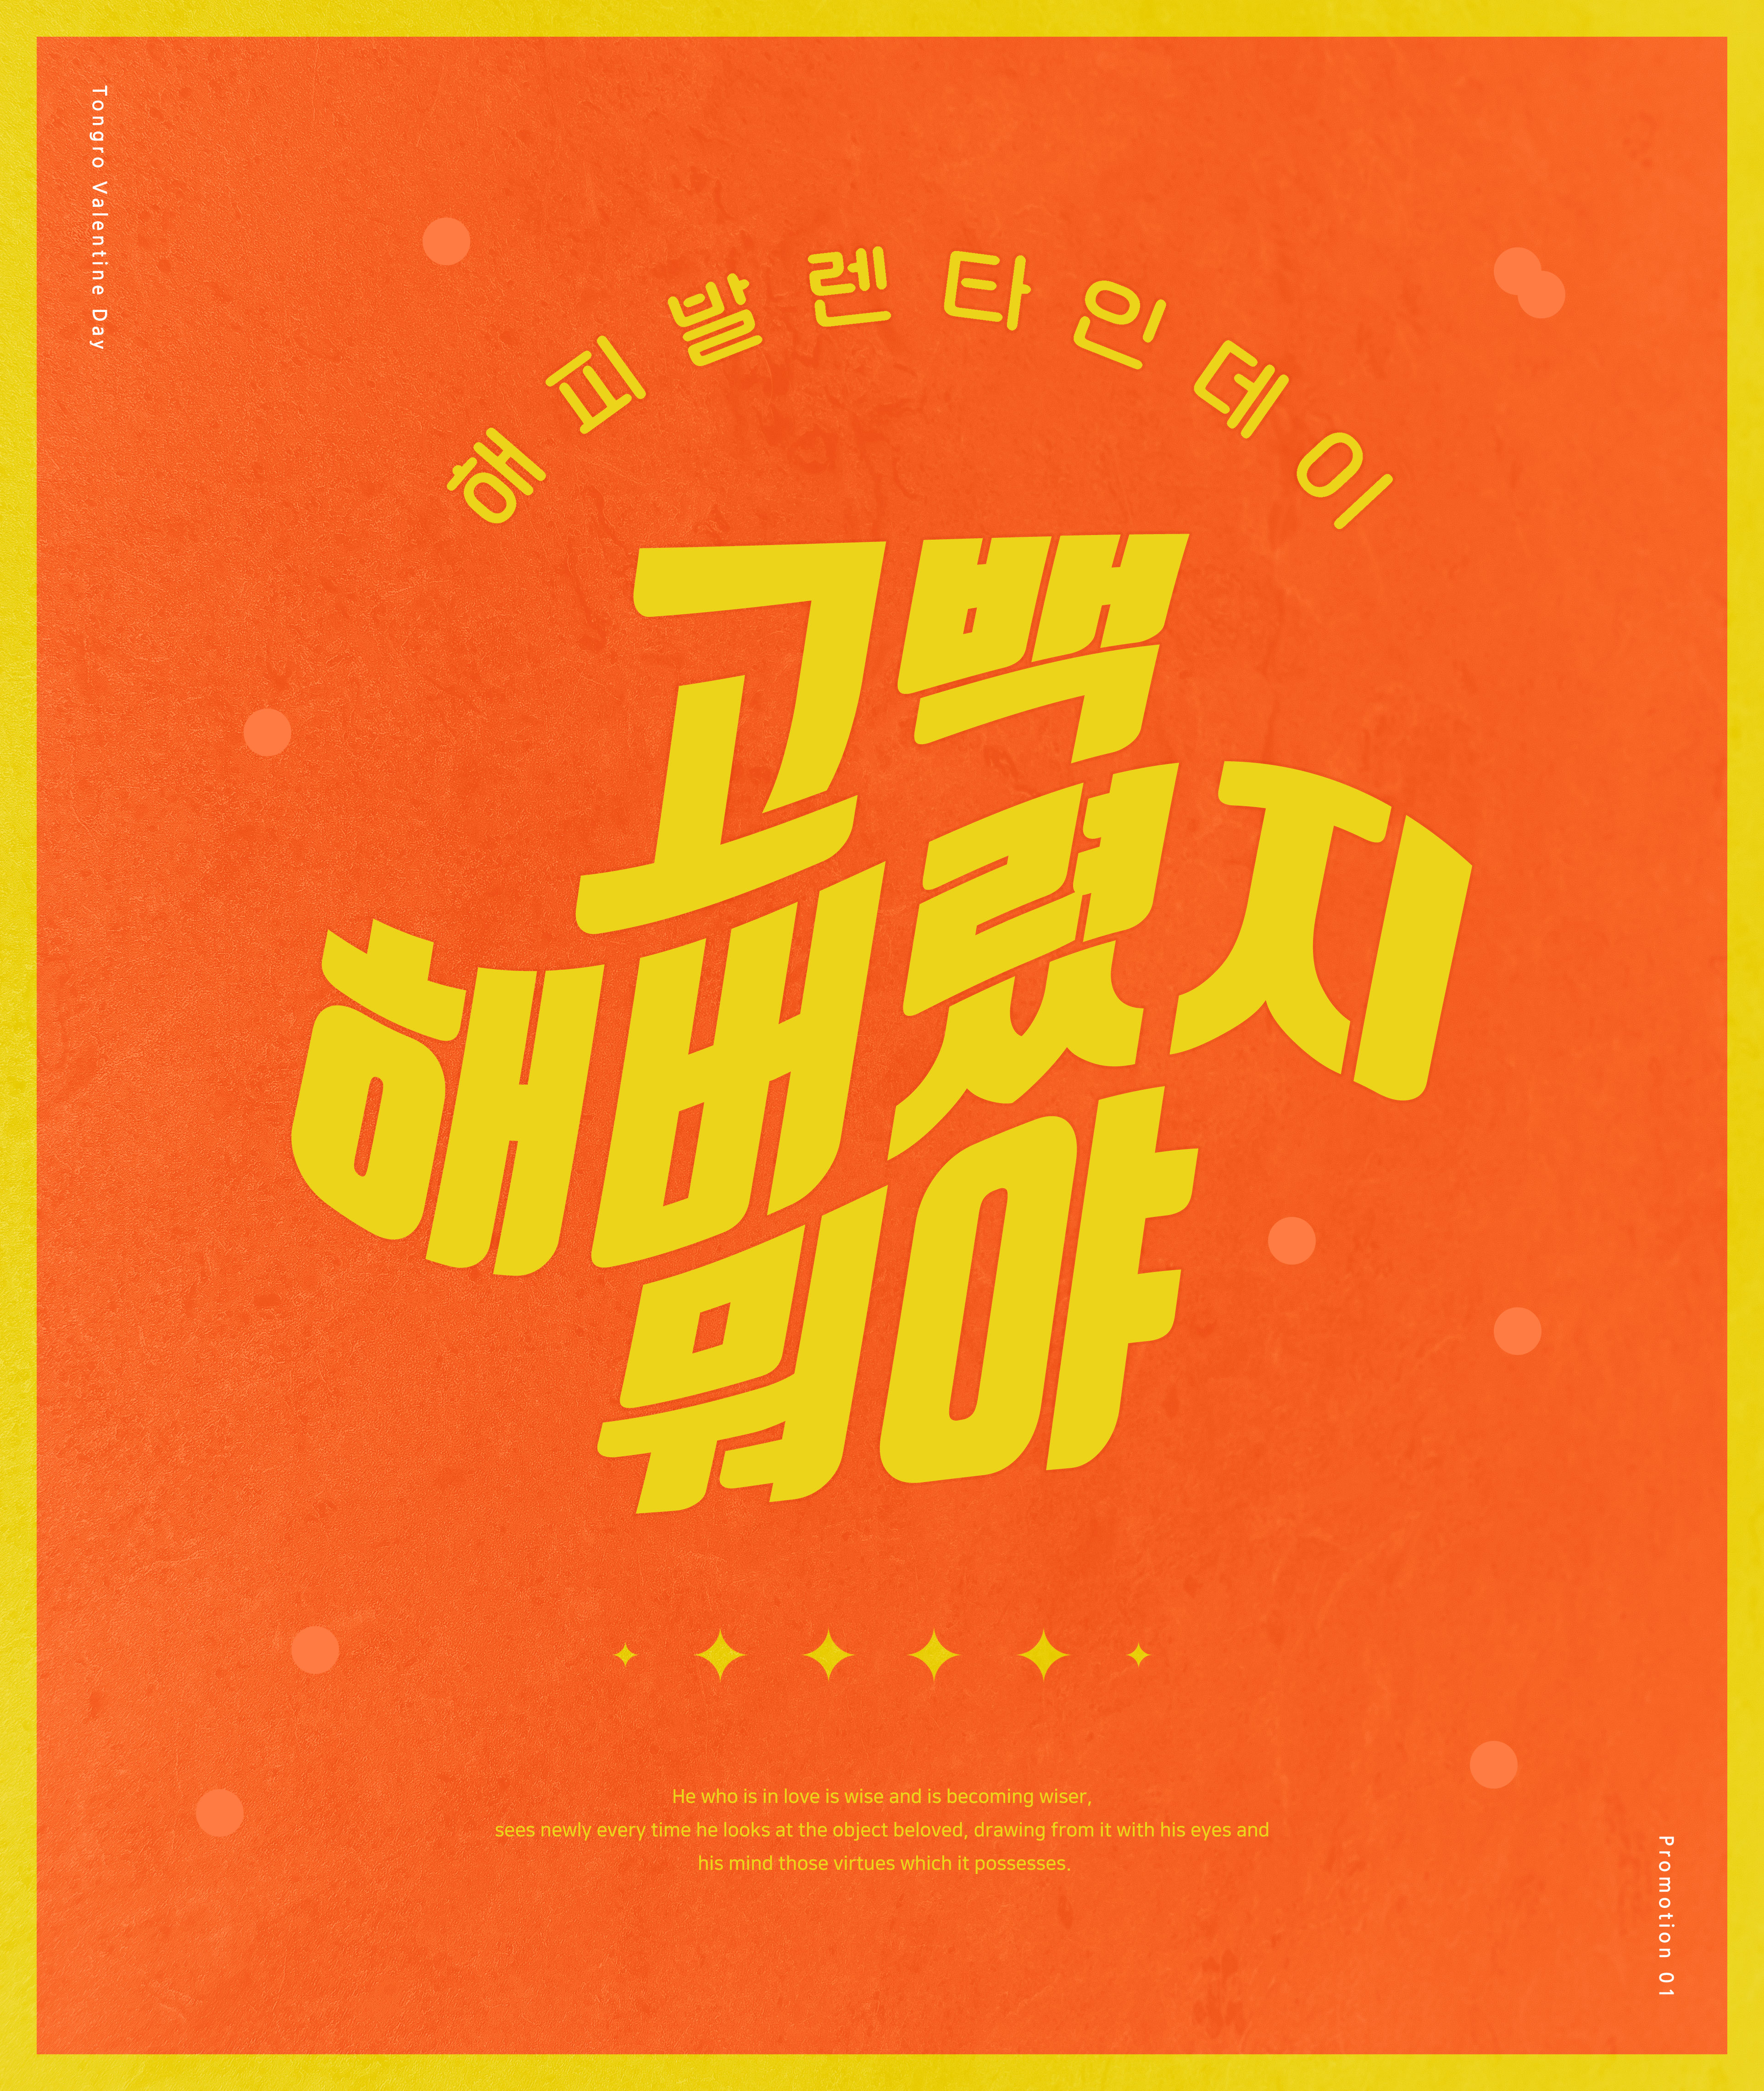 橙&黄配色简约风格情人节主题多用途海报PSD素材第一素材精选韩国素材插图